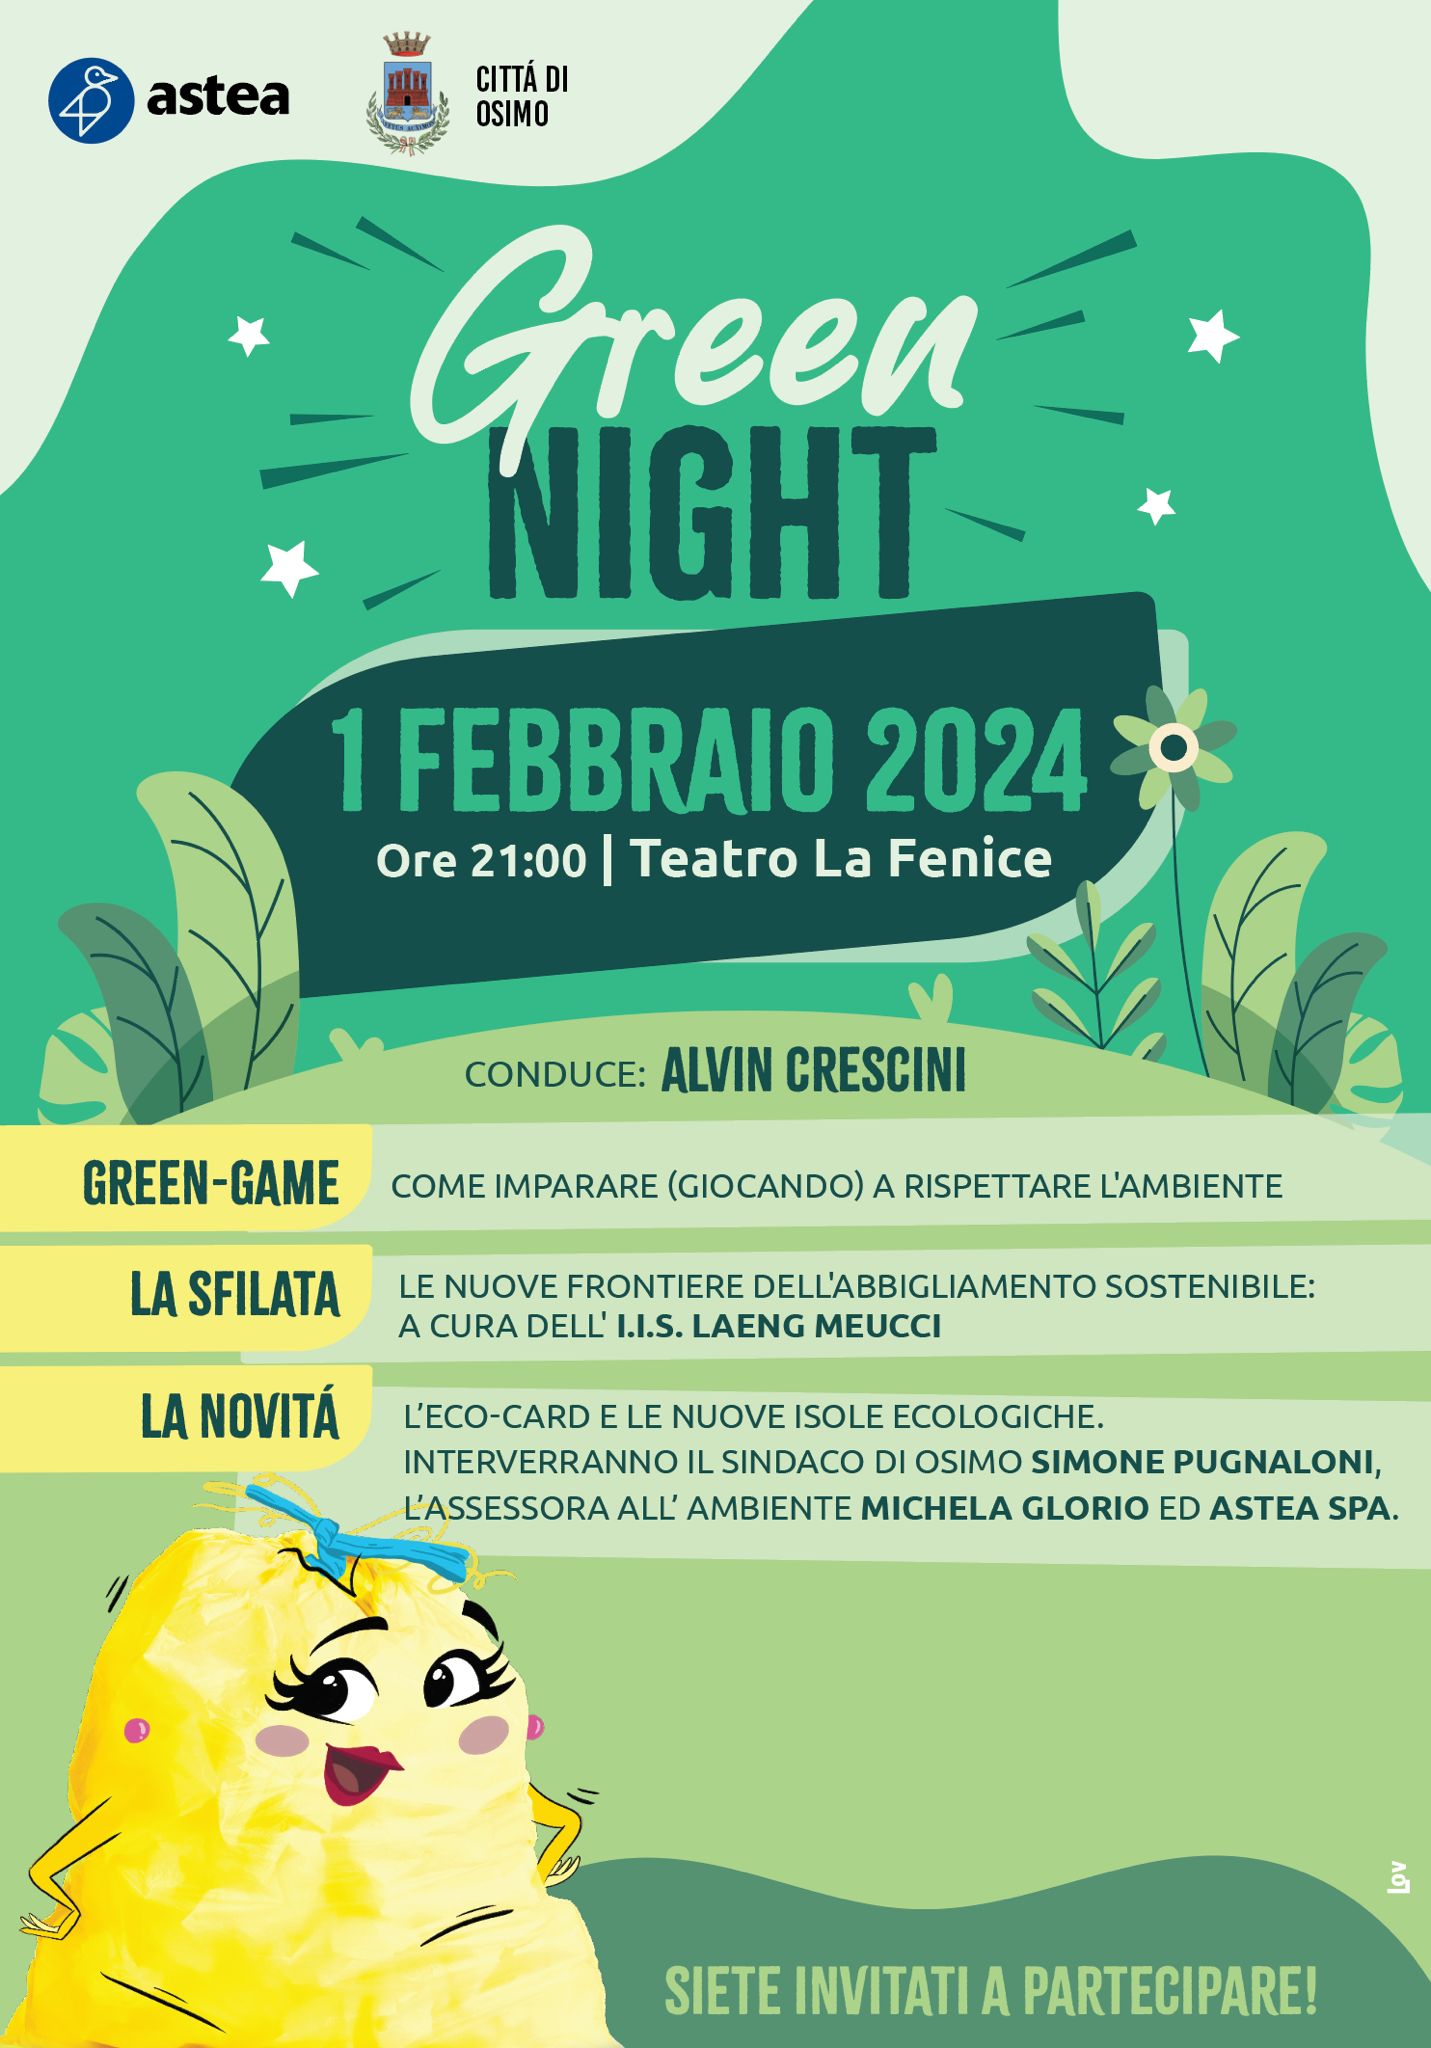 La “Green Night” al Teatro La Nuova Fenice di Osimo, giovedì 1 febbraio 2024